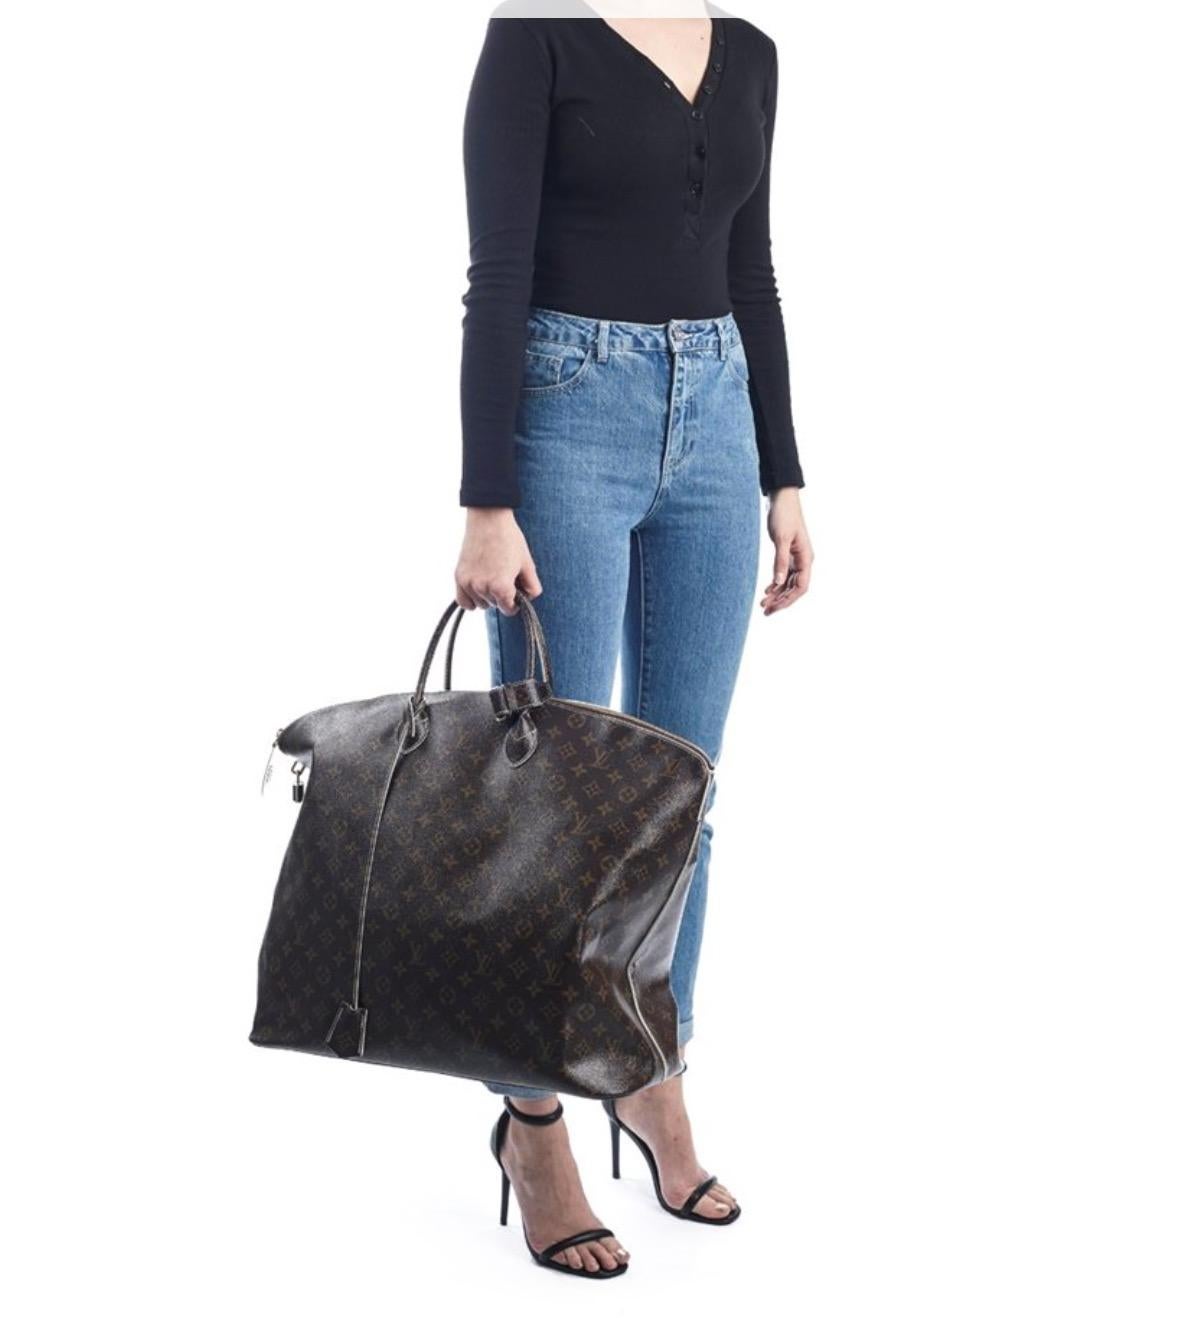 Black Louis Vuitton Monogram Men's Women's Carryall Duffle Top Handle Travel Tote Bag